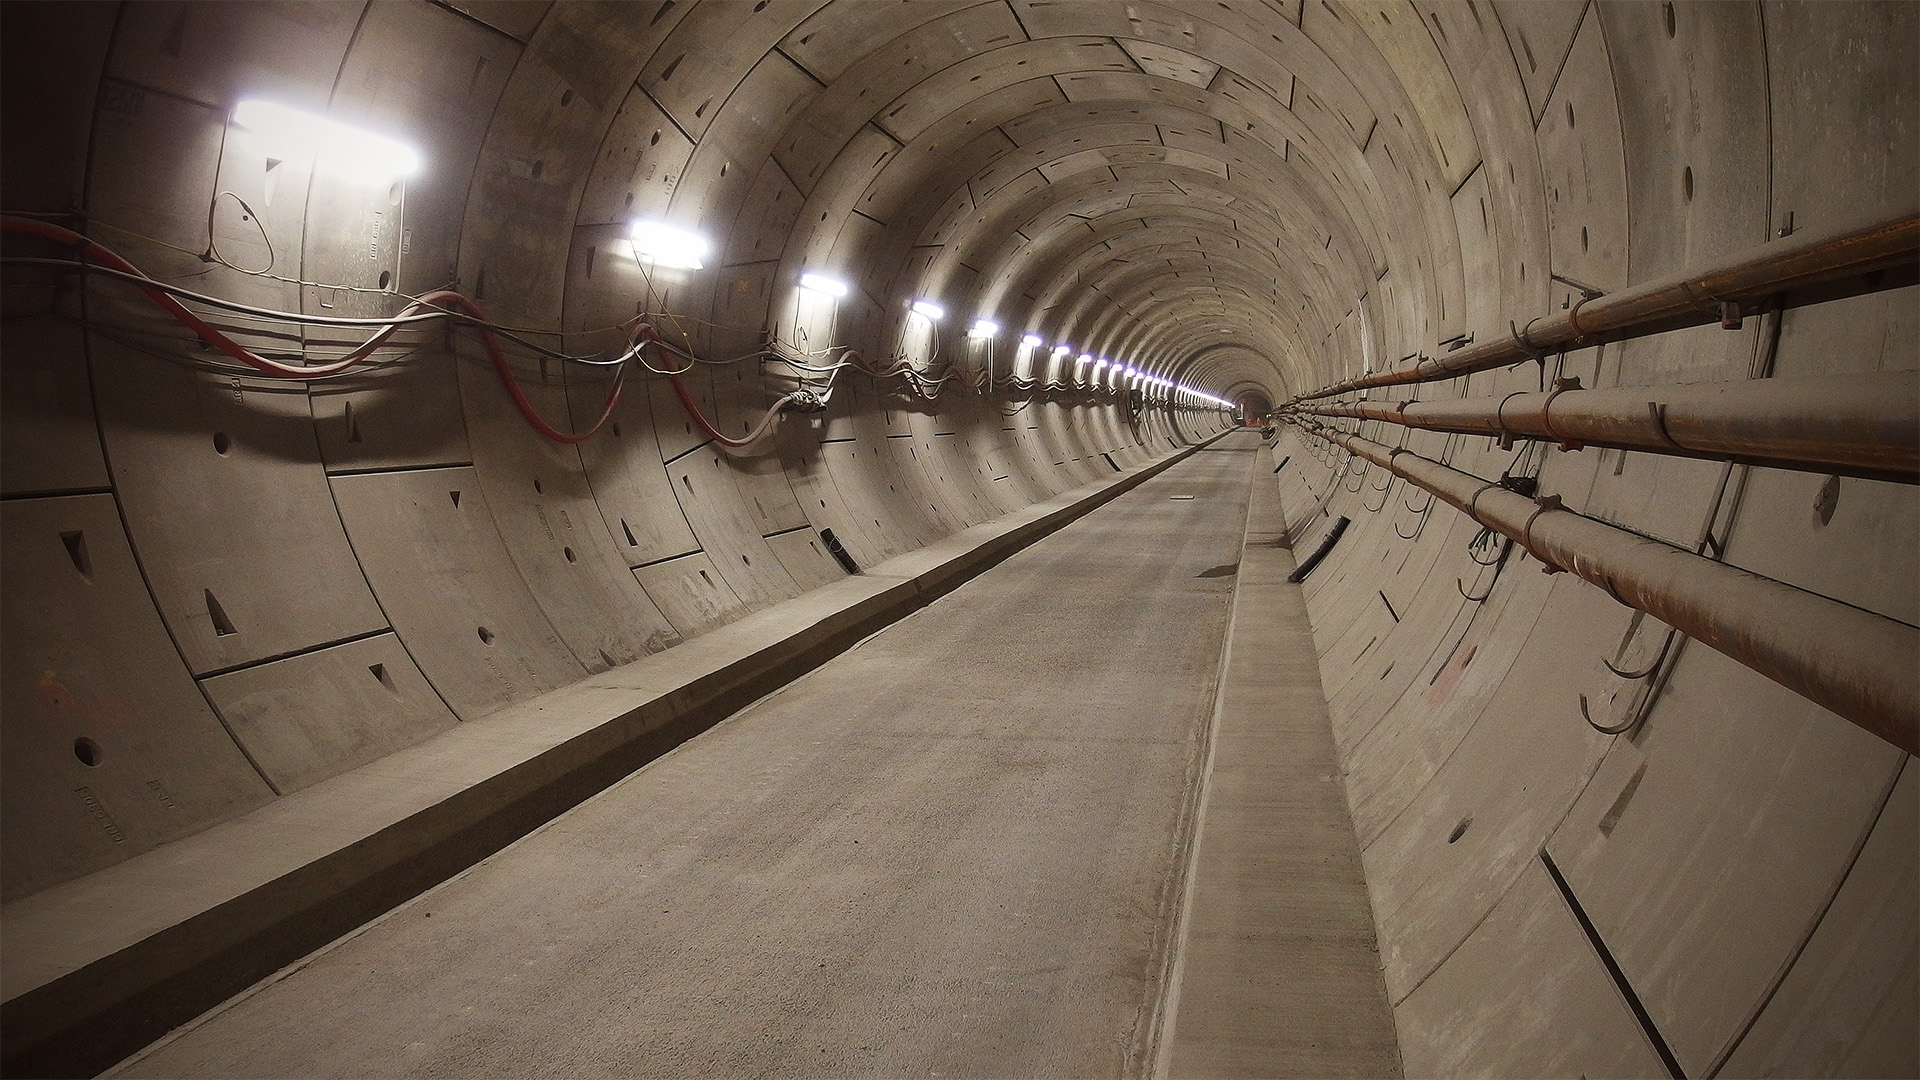 A straight tunnel climbs steadily towards a dark portal